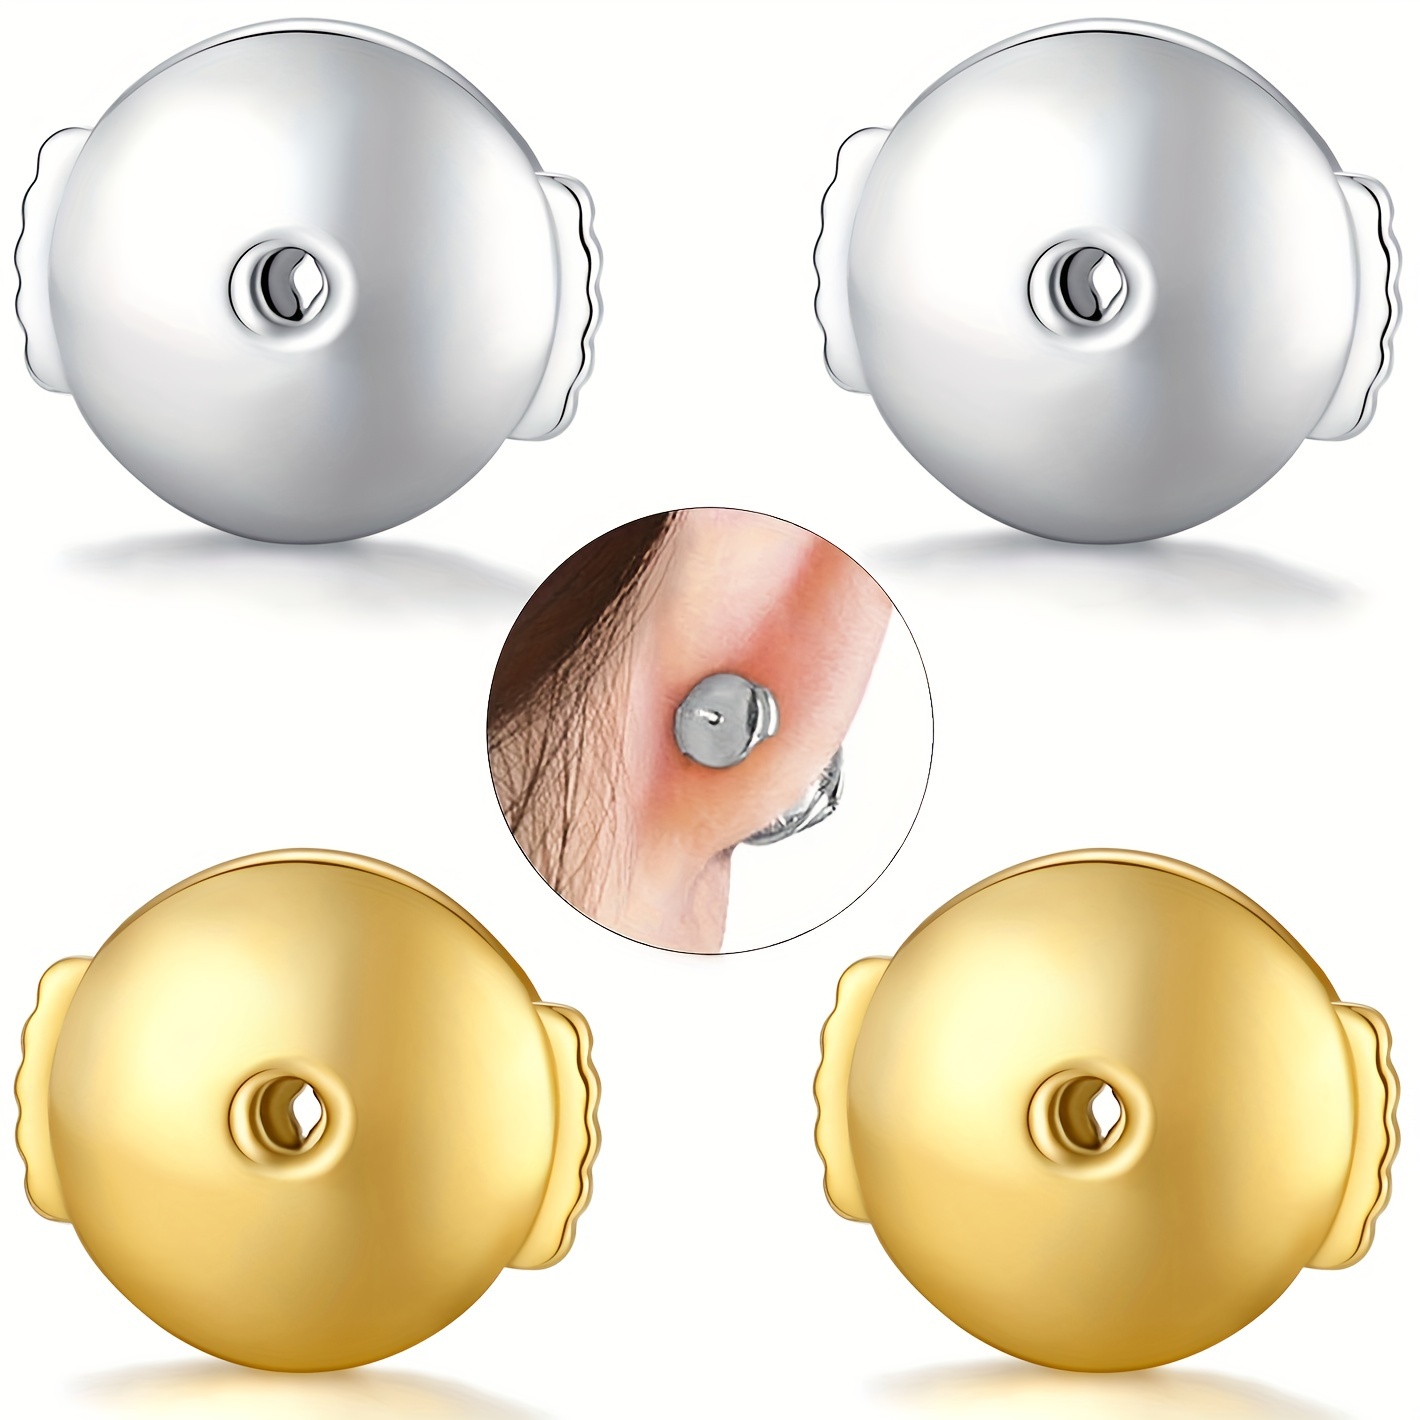 14K Gold Bullet Locking Earring Backs for Diamond Studs,925 Sterling Silver  Hypoallergenic Replacements Backings for Pierced Earrings, Silver 5 Pairs